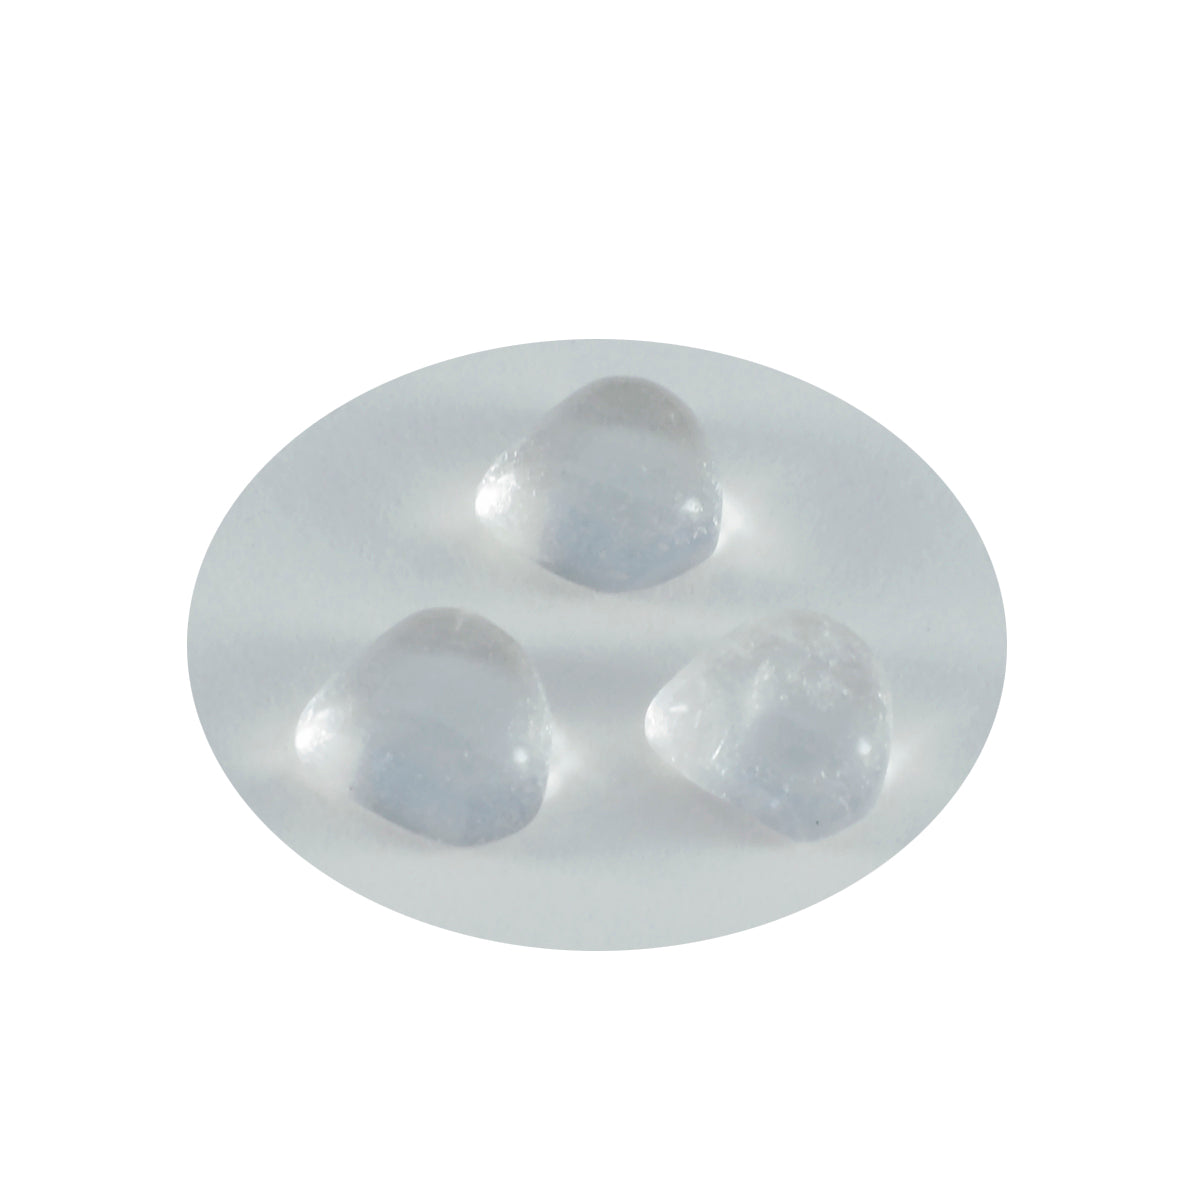 riyogems 1pc cabochon di quarzo cristallo bianco 14x14 mm a forma di cuore con pietra preziosa di qualità A+1